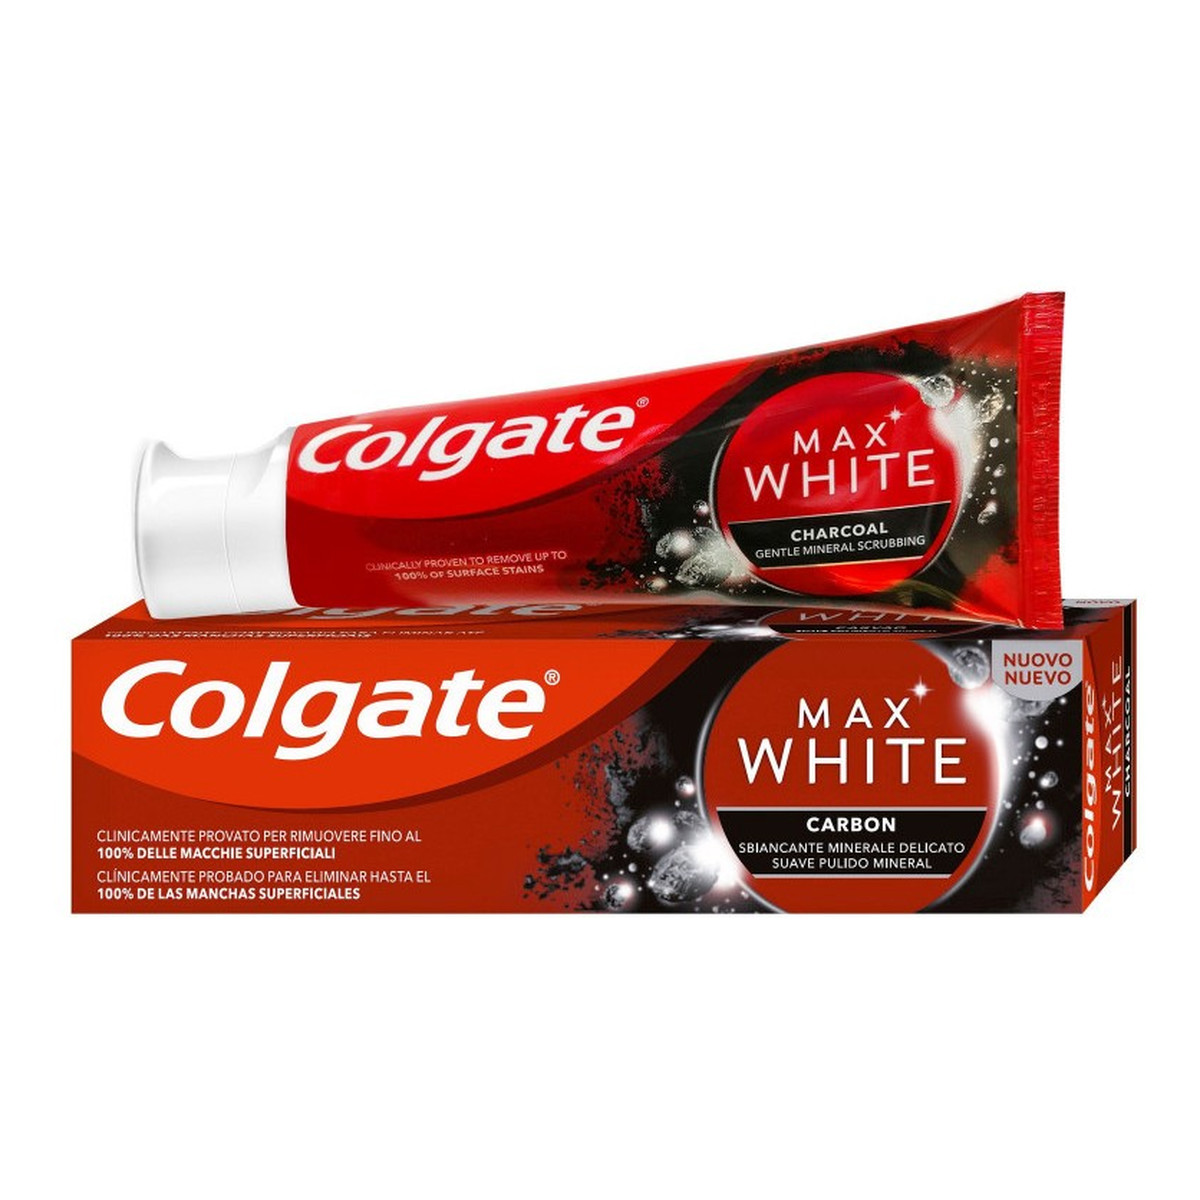 Colgate Max White Carbon Wybielająca pasta do zębów Charcoal 75ml